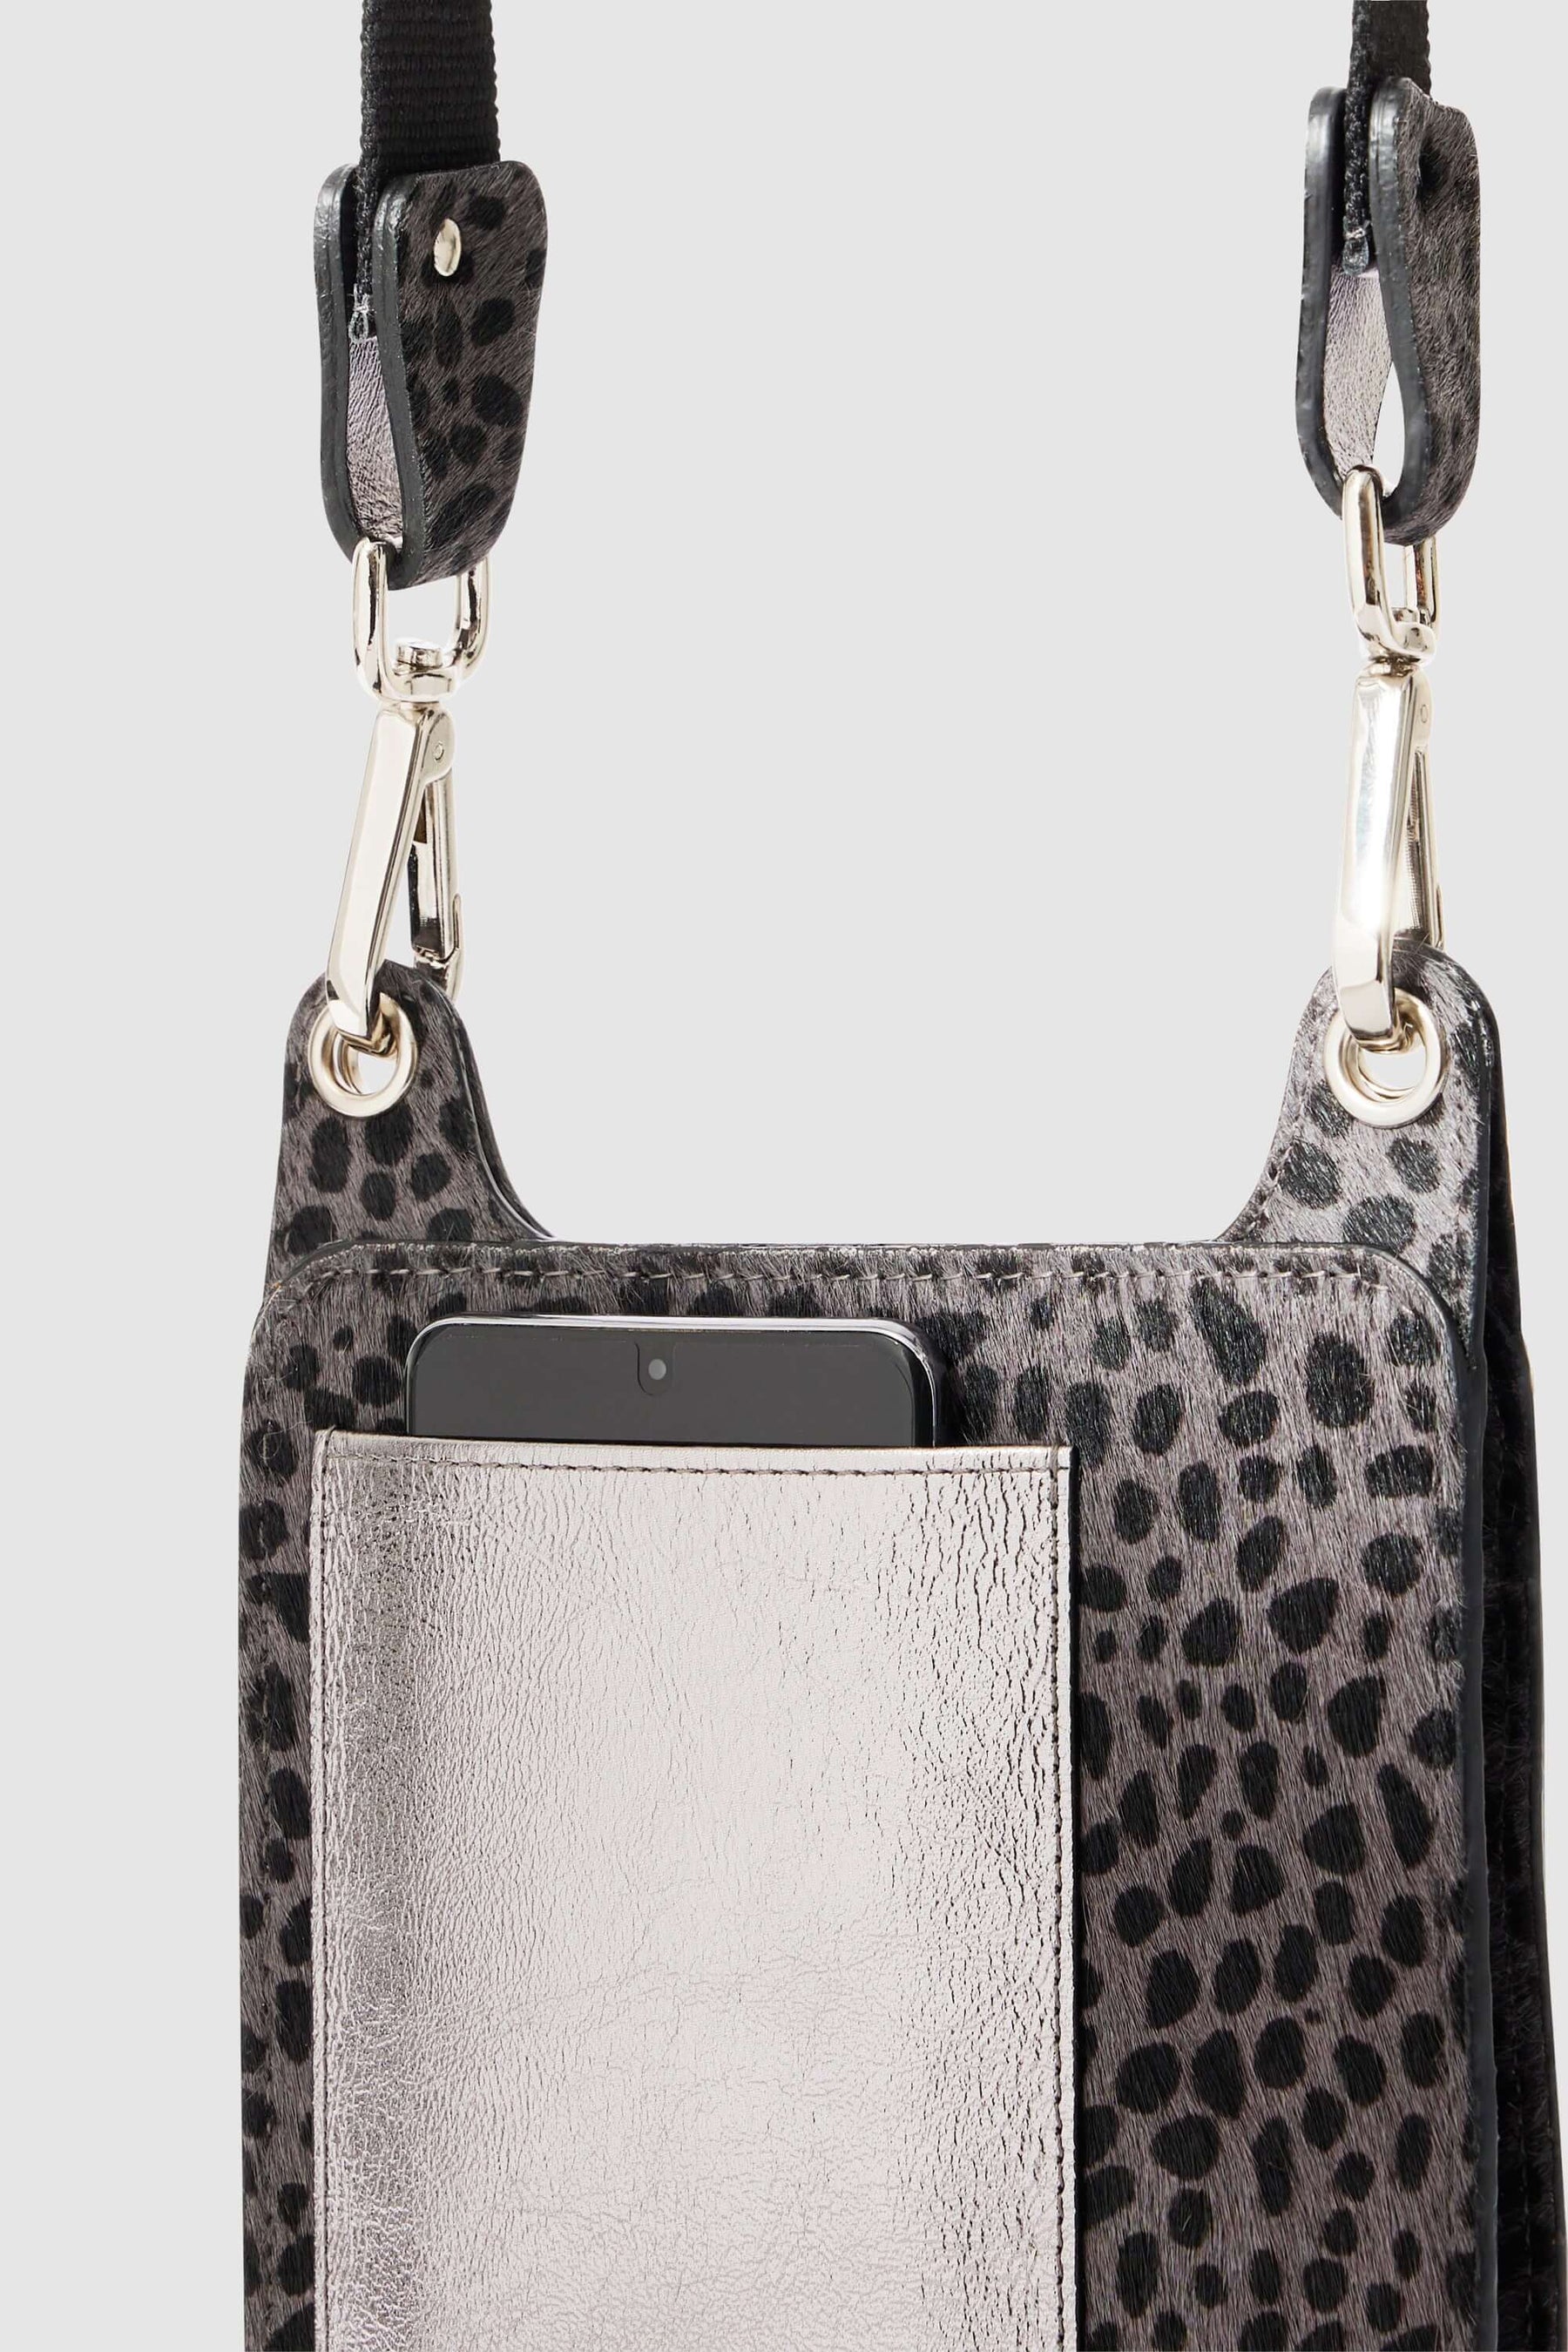 Stanley satchel in grey Cheetah printed leather